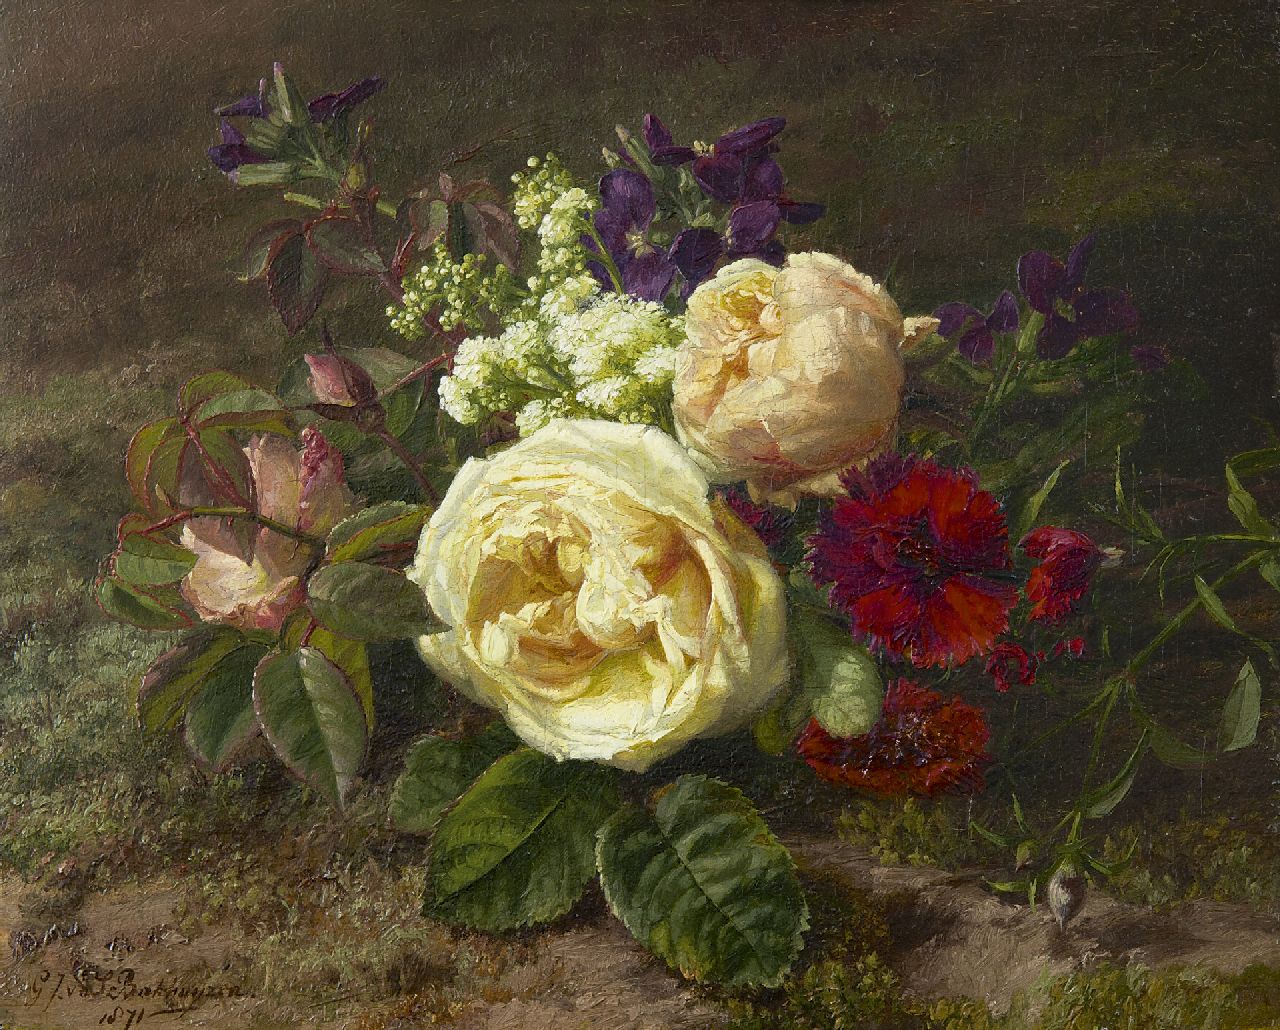 Sande Bakhuyzen G.J. van de | 'Gerardine' Jacoba van de Sande Bakhuyzen, Zomerbloemen op de bosgrond, olieverf op paneel 23,0 x 28,7 cm, gesigneerd linksonder en gedateerd 1871